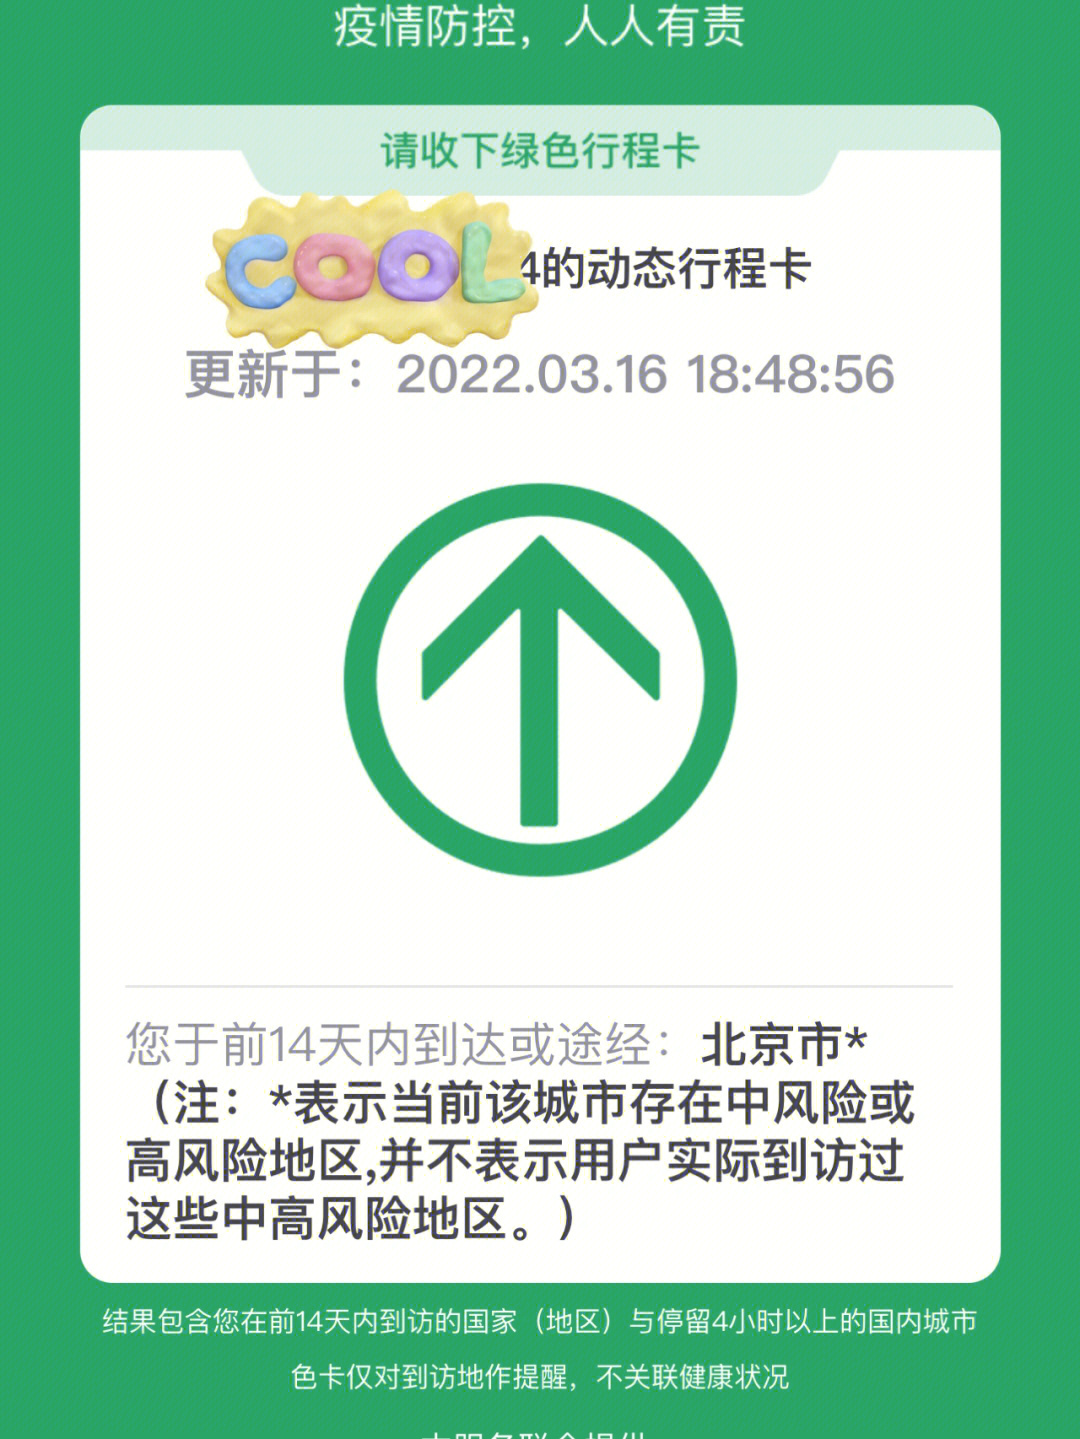 全额退票终于完成330北京97海口(赴方法)